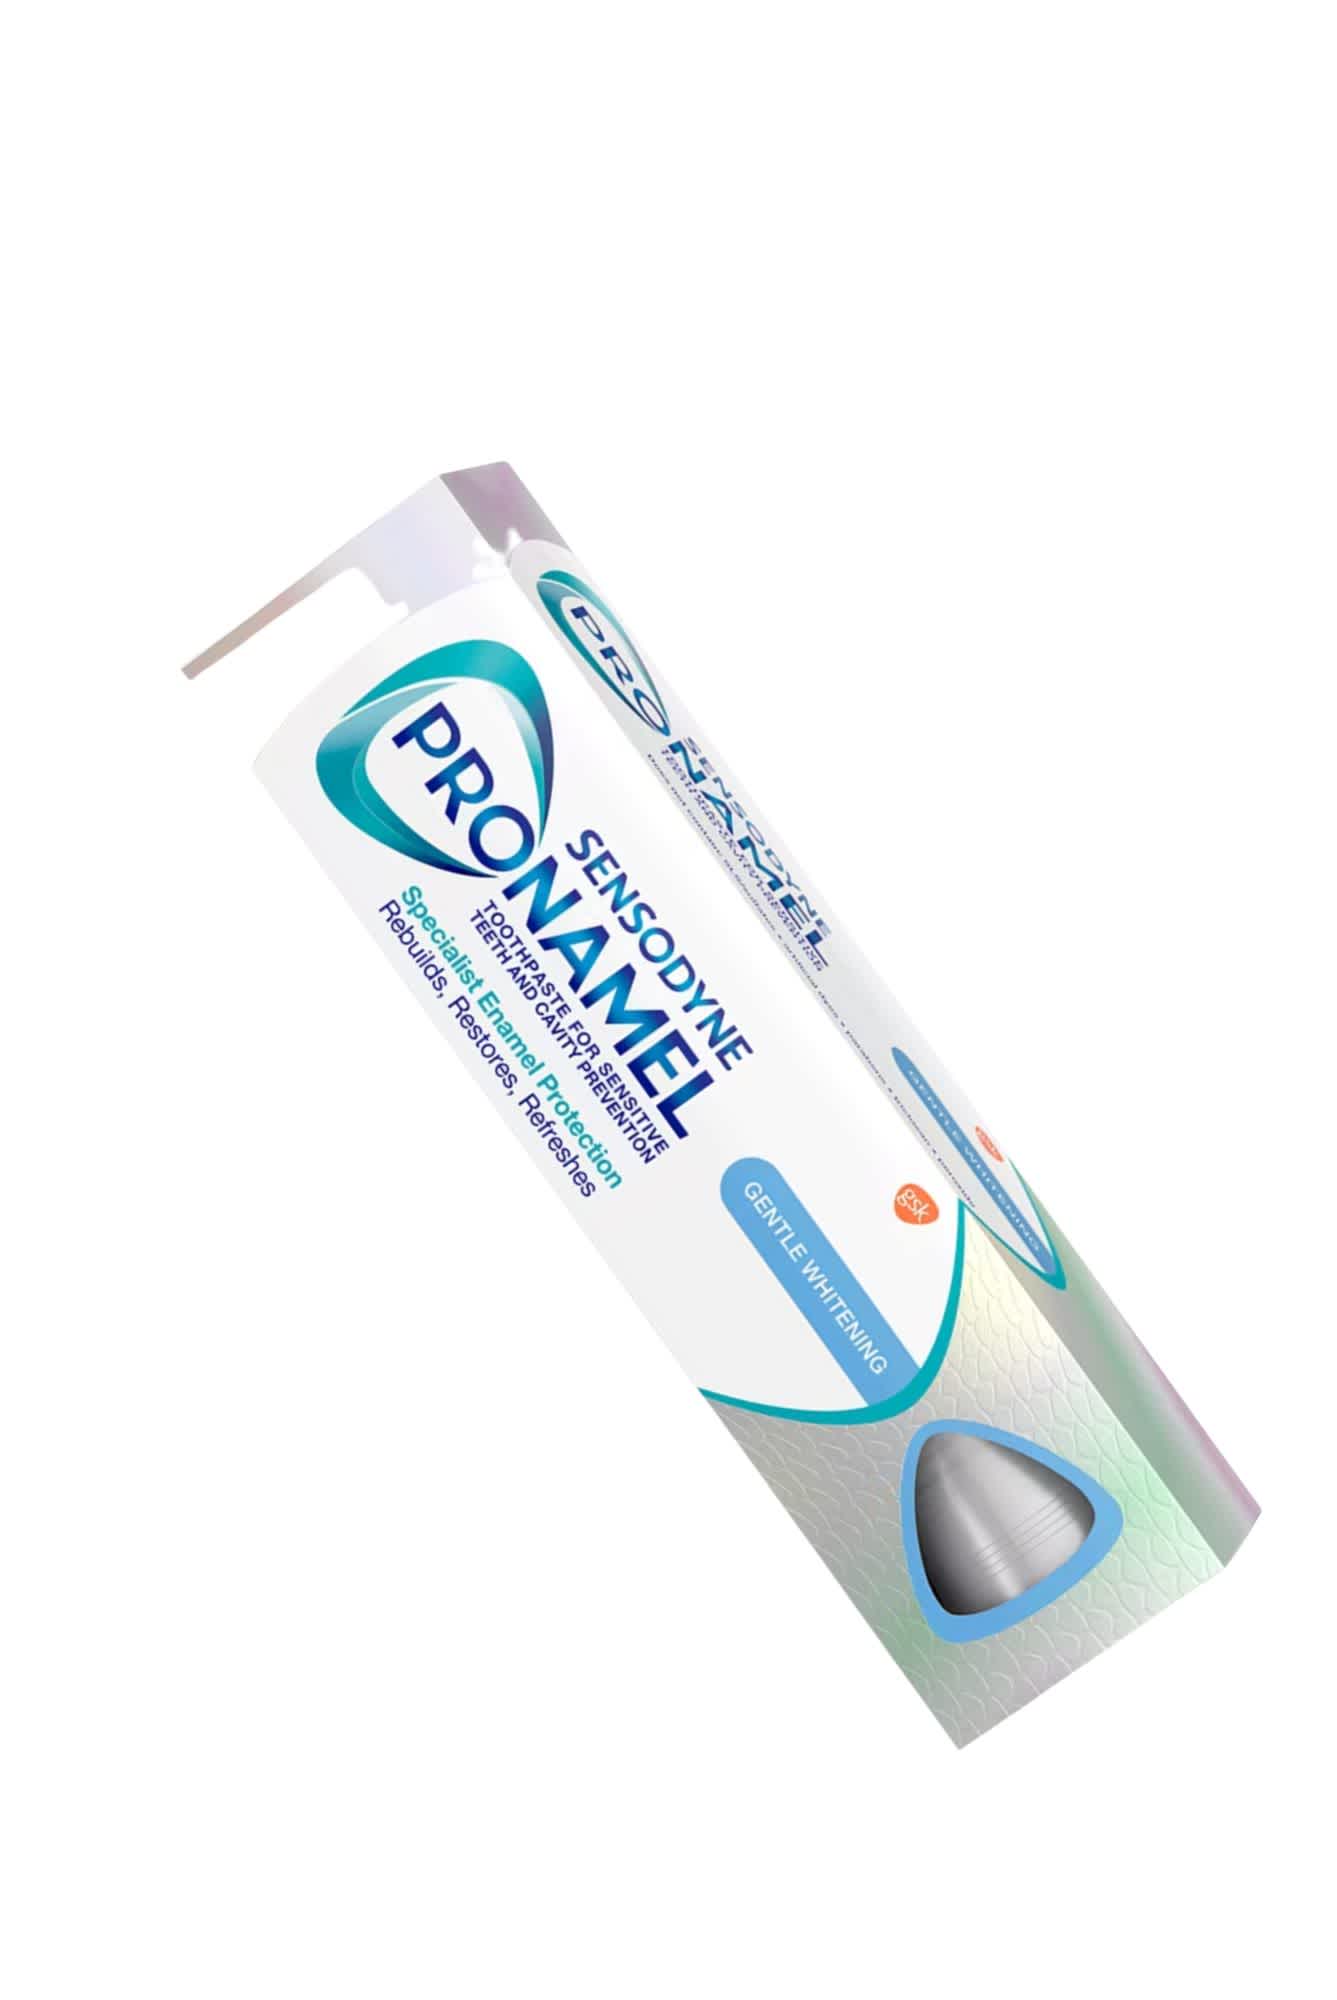 Sensodyne, Pronamel Toothpaste ($9